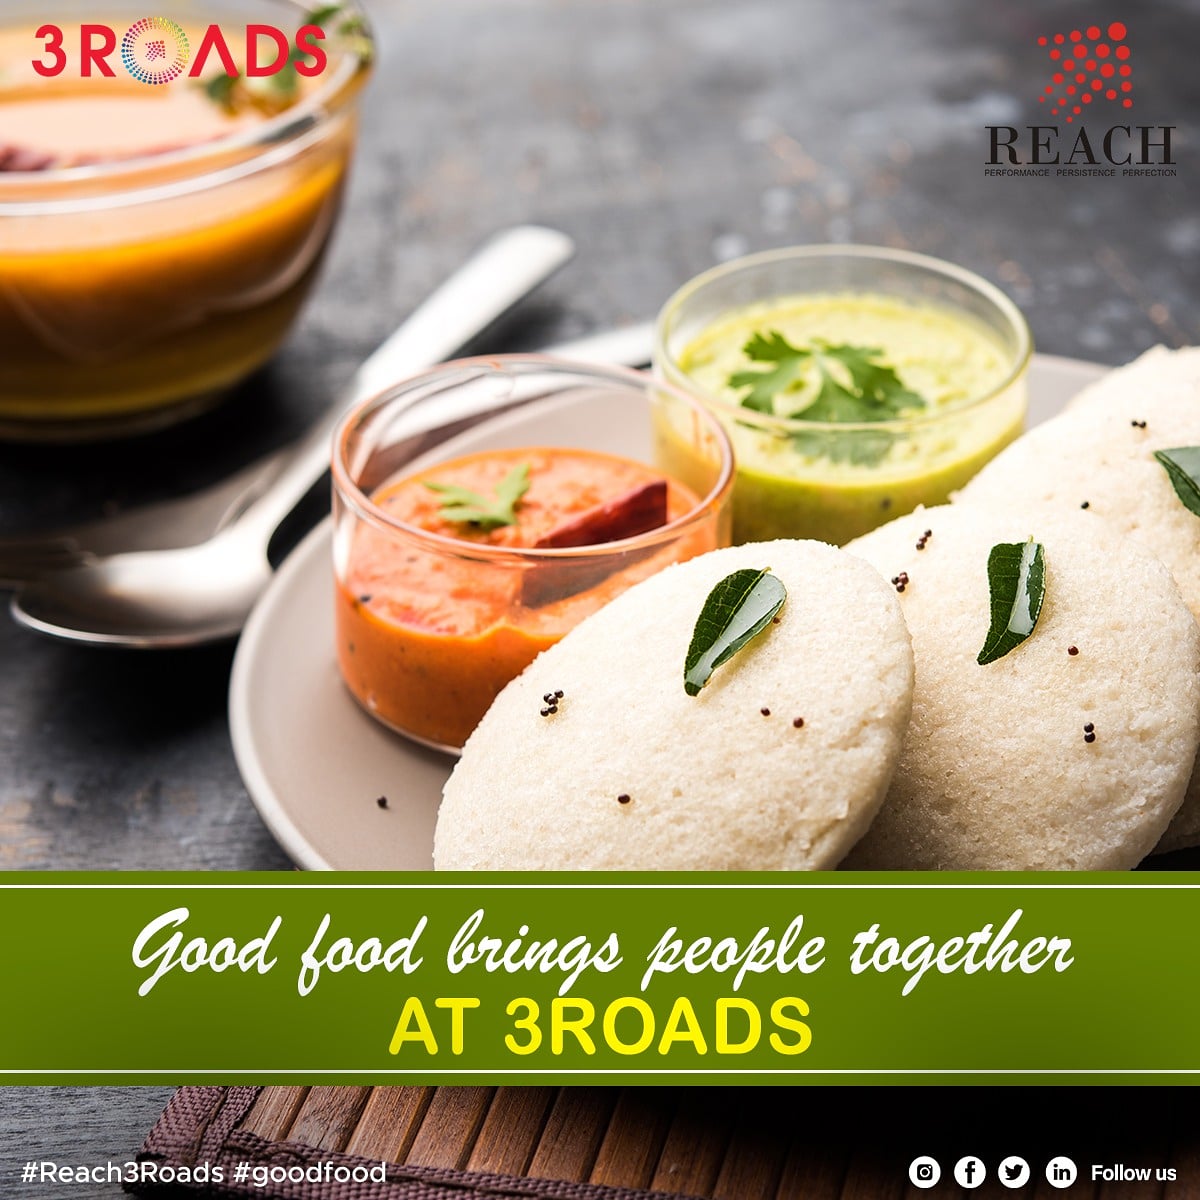 Good food brings people together at 3ROADS                                                                                                        #Reach3Roads #Haldirams #TasteOfTradition #3Roads #ReachGroup #ReachProGroup #SpiceyFood #StreetFood #Cravings #WeekendsAt3Roads